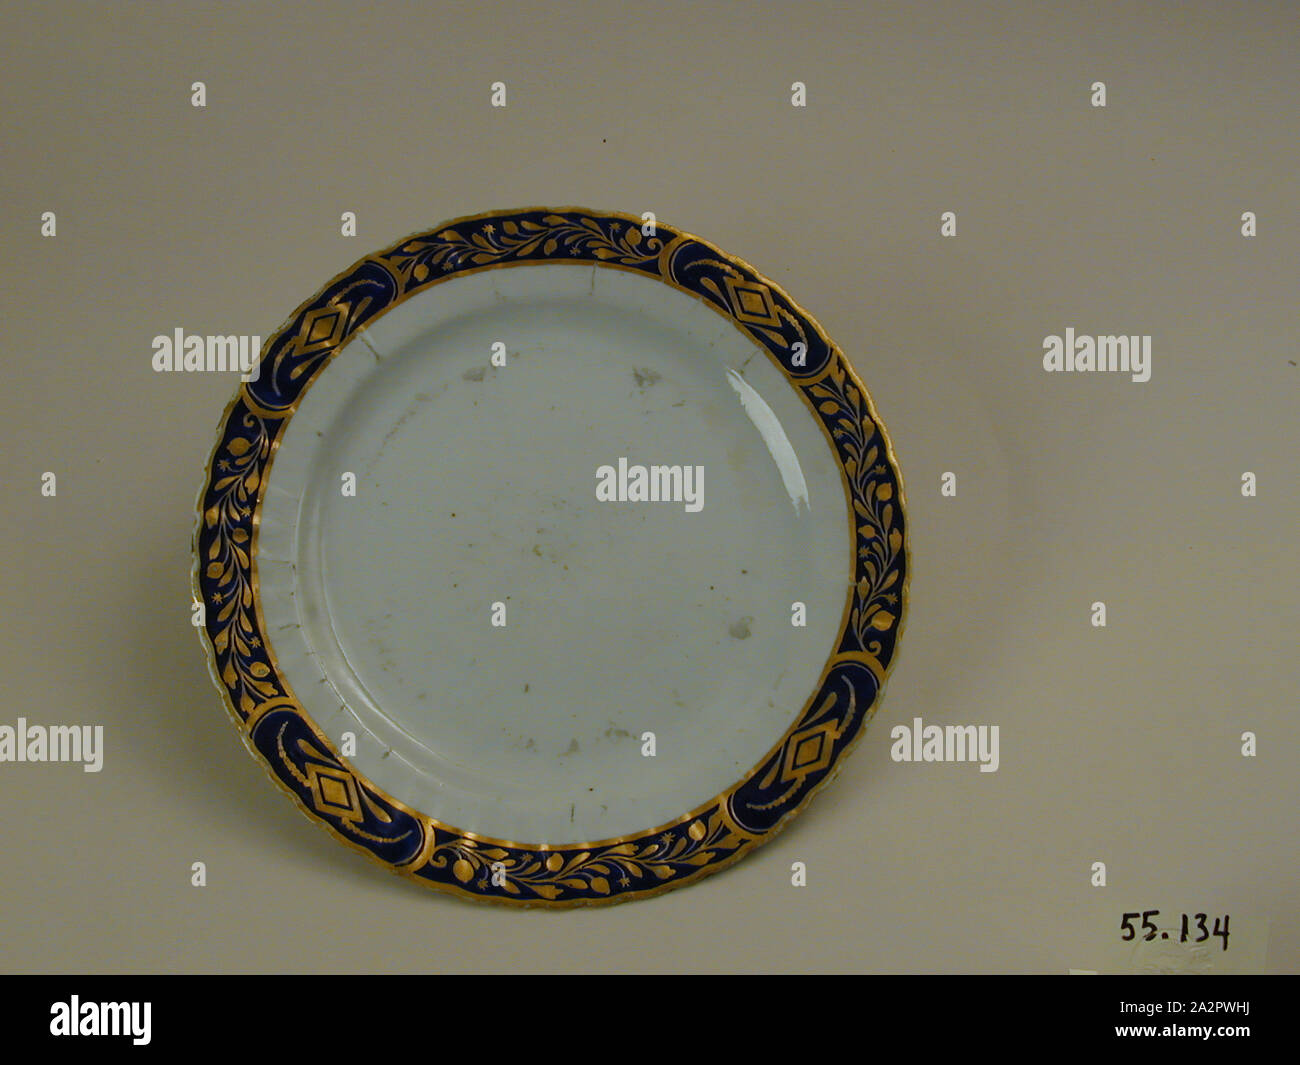 (Inconnu), chinois, 18e siècle Plaque émaillée, porcelaine pâte dure avec émail polychrome et dorure, Hauteur x diamètre : 7/8 x 9 5/8 in. (2,2 x 24,4 cm Banque D'Images